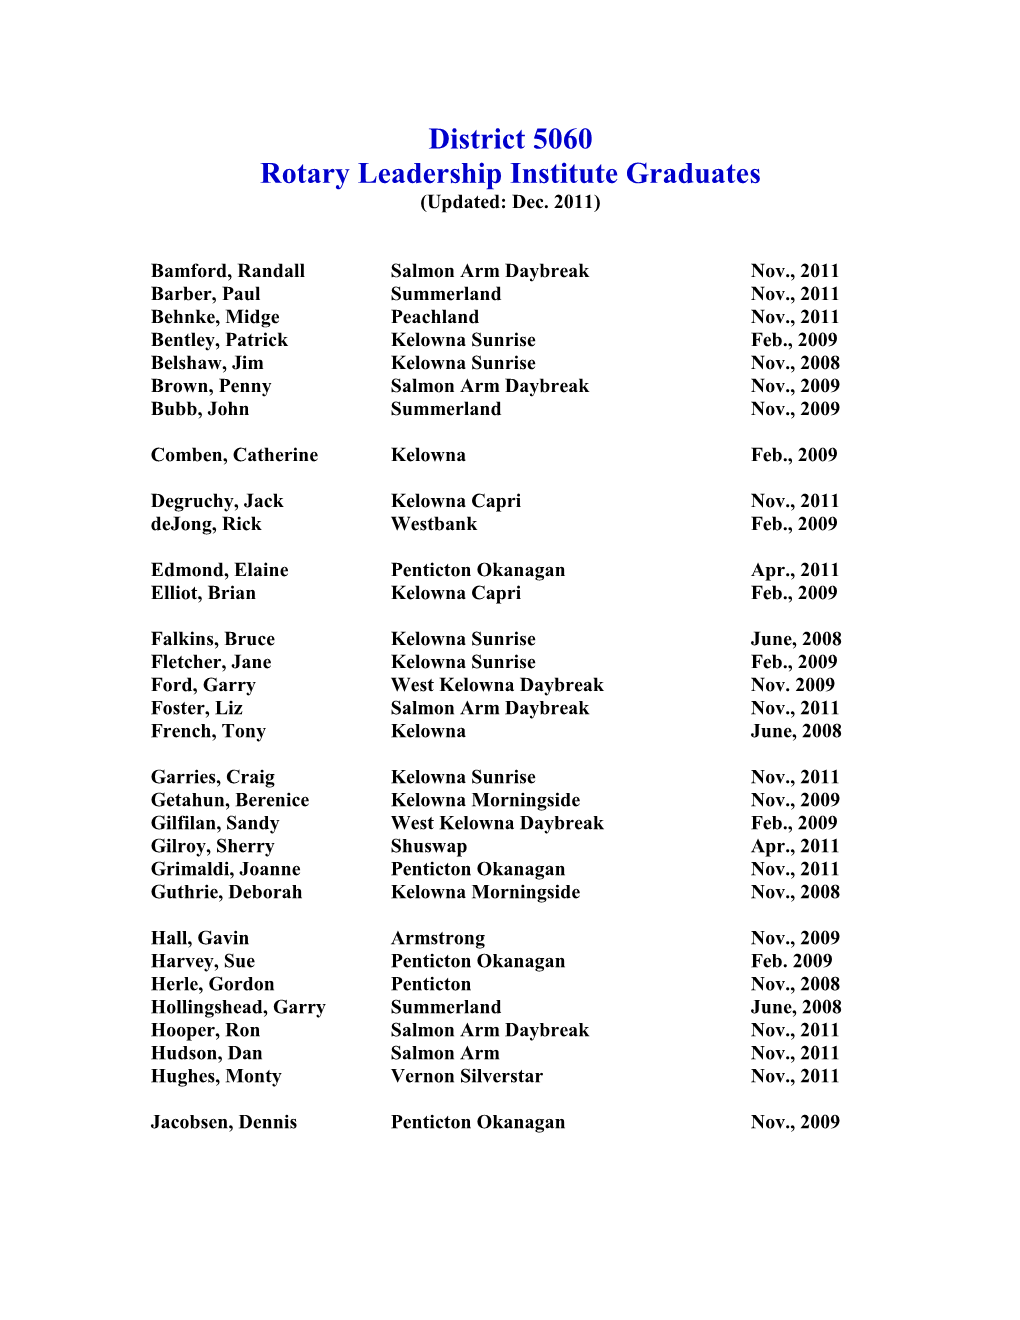 District 5060 Rotary Leadership Institute Graduates (Updated: Dec